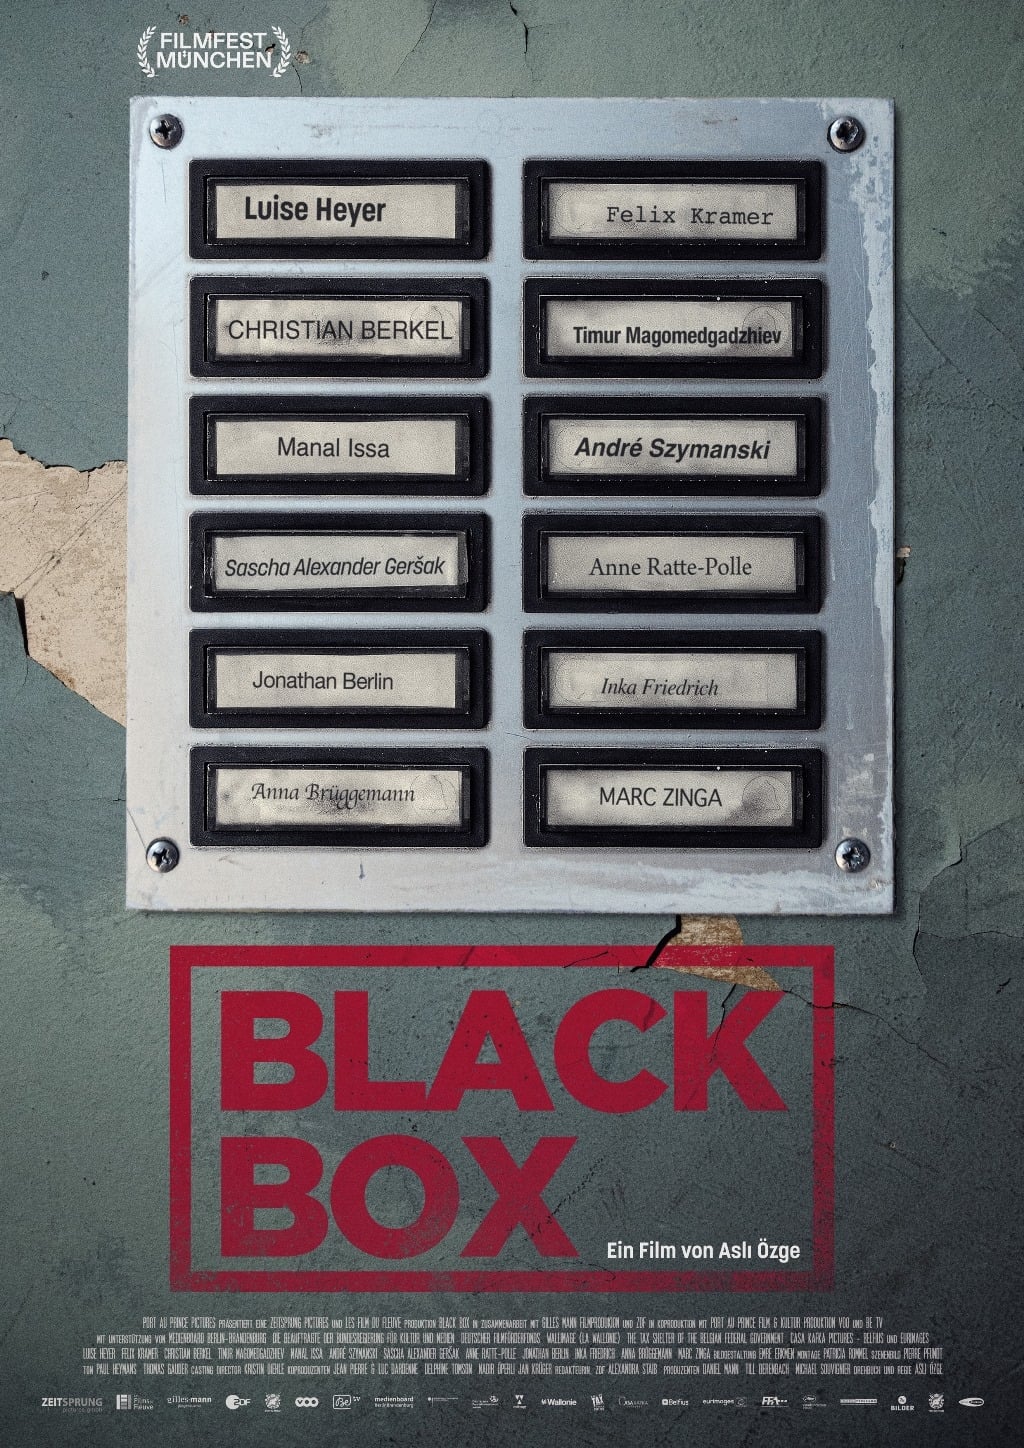 Black Box Wem Kannst Du Vertrauen